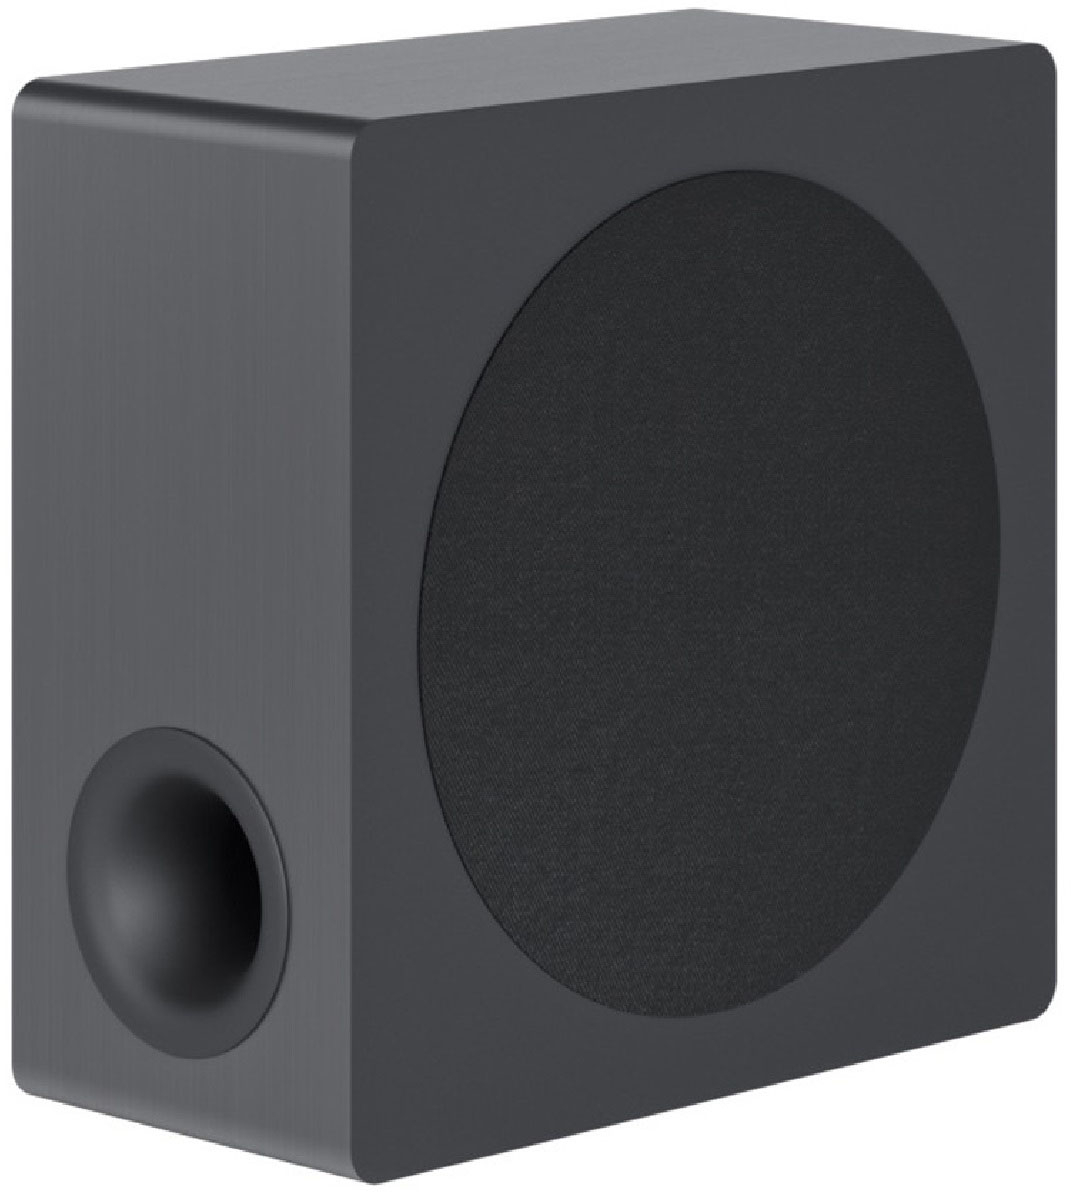 LG Soundbar with Dolby Atmos® 9.1.5 Channel